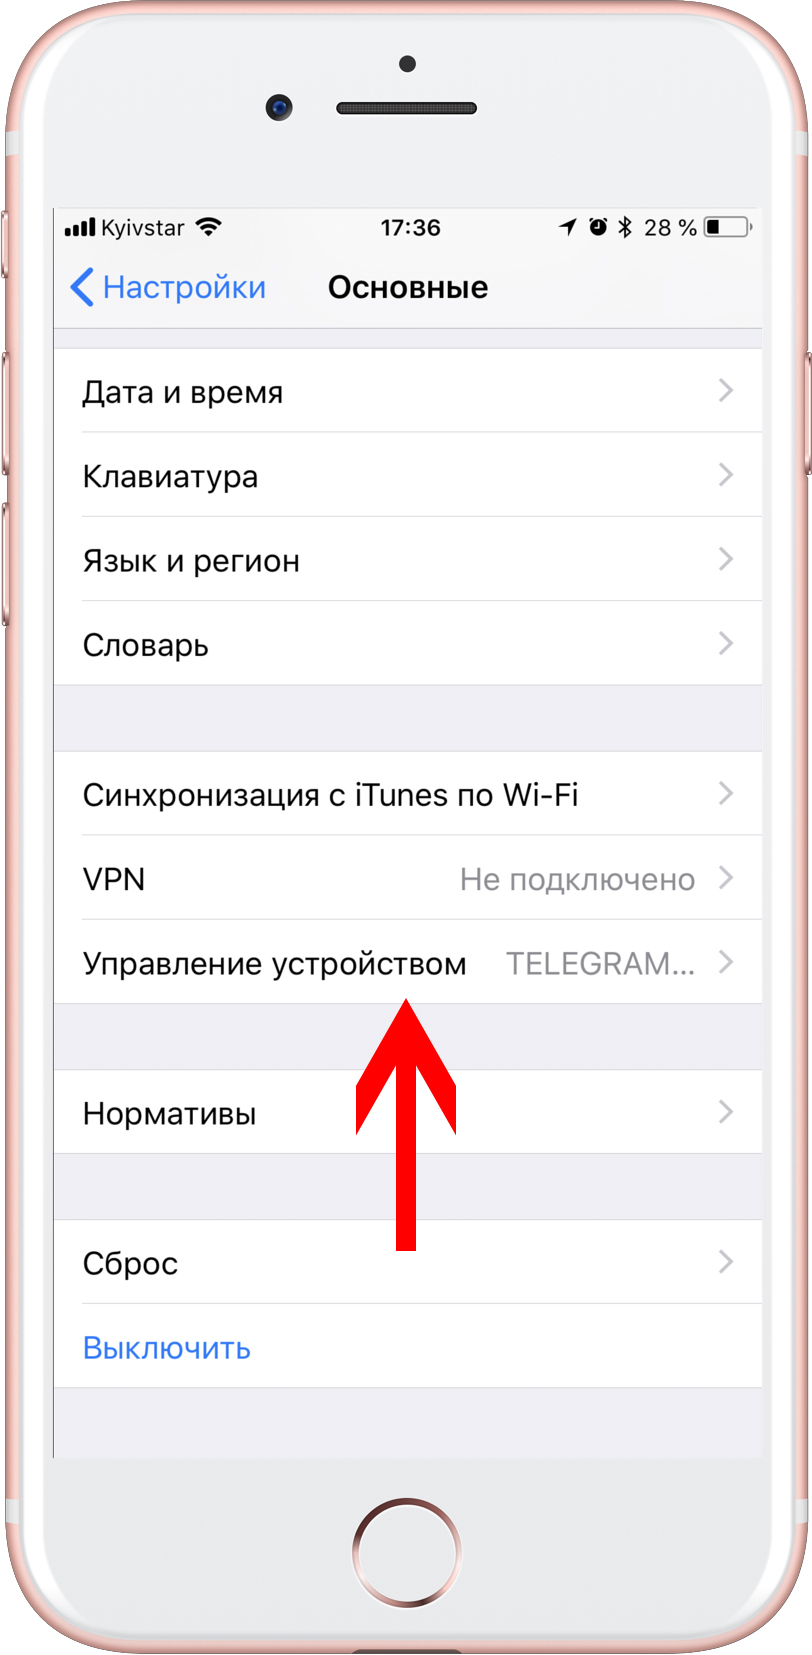 Как обновить телеграмм на андроид до последней версии бесплатно на русском языке последнюю версию фото 22